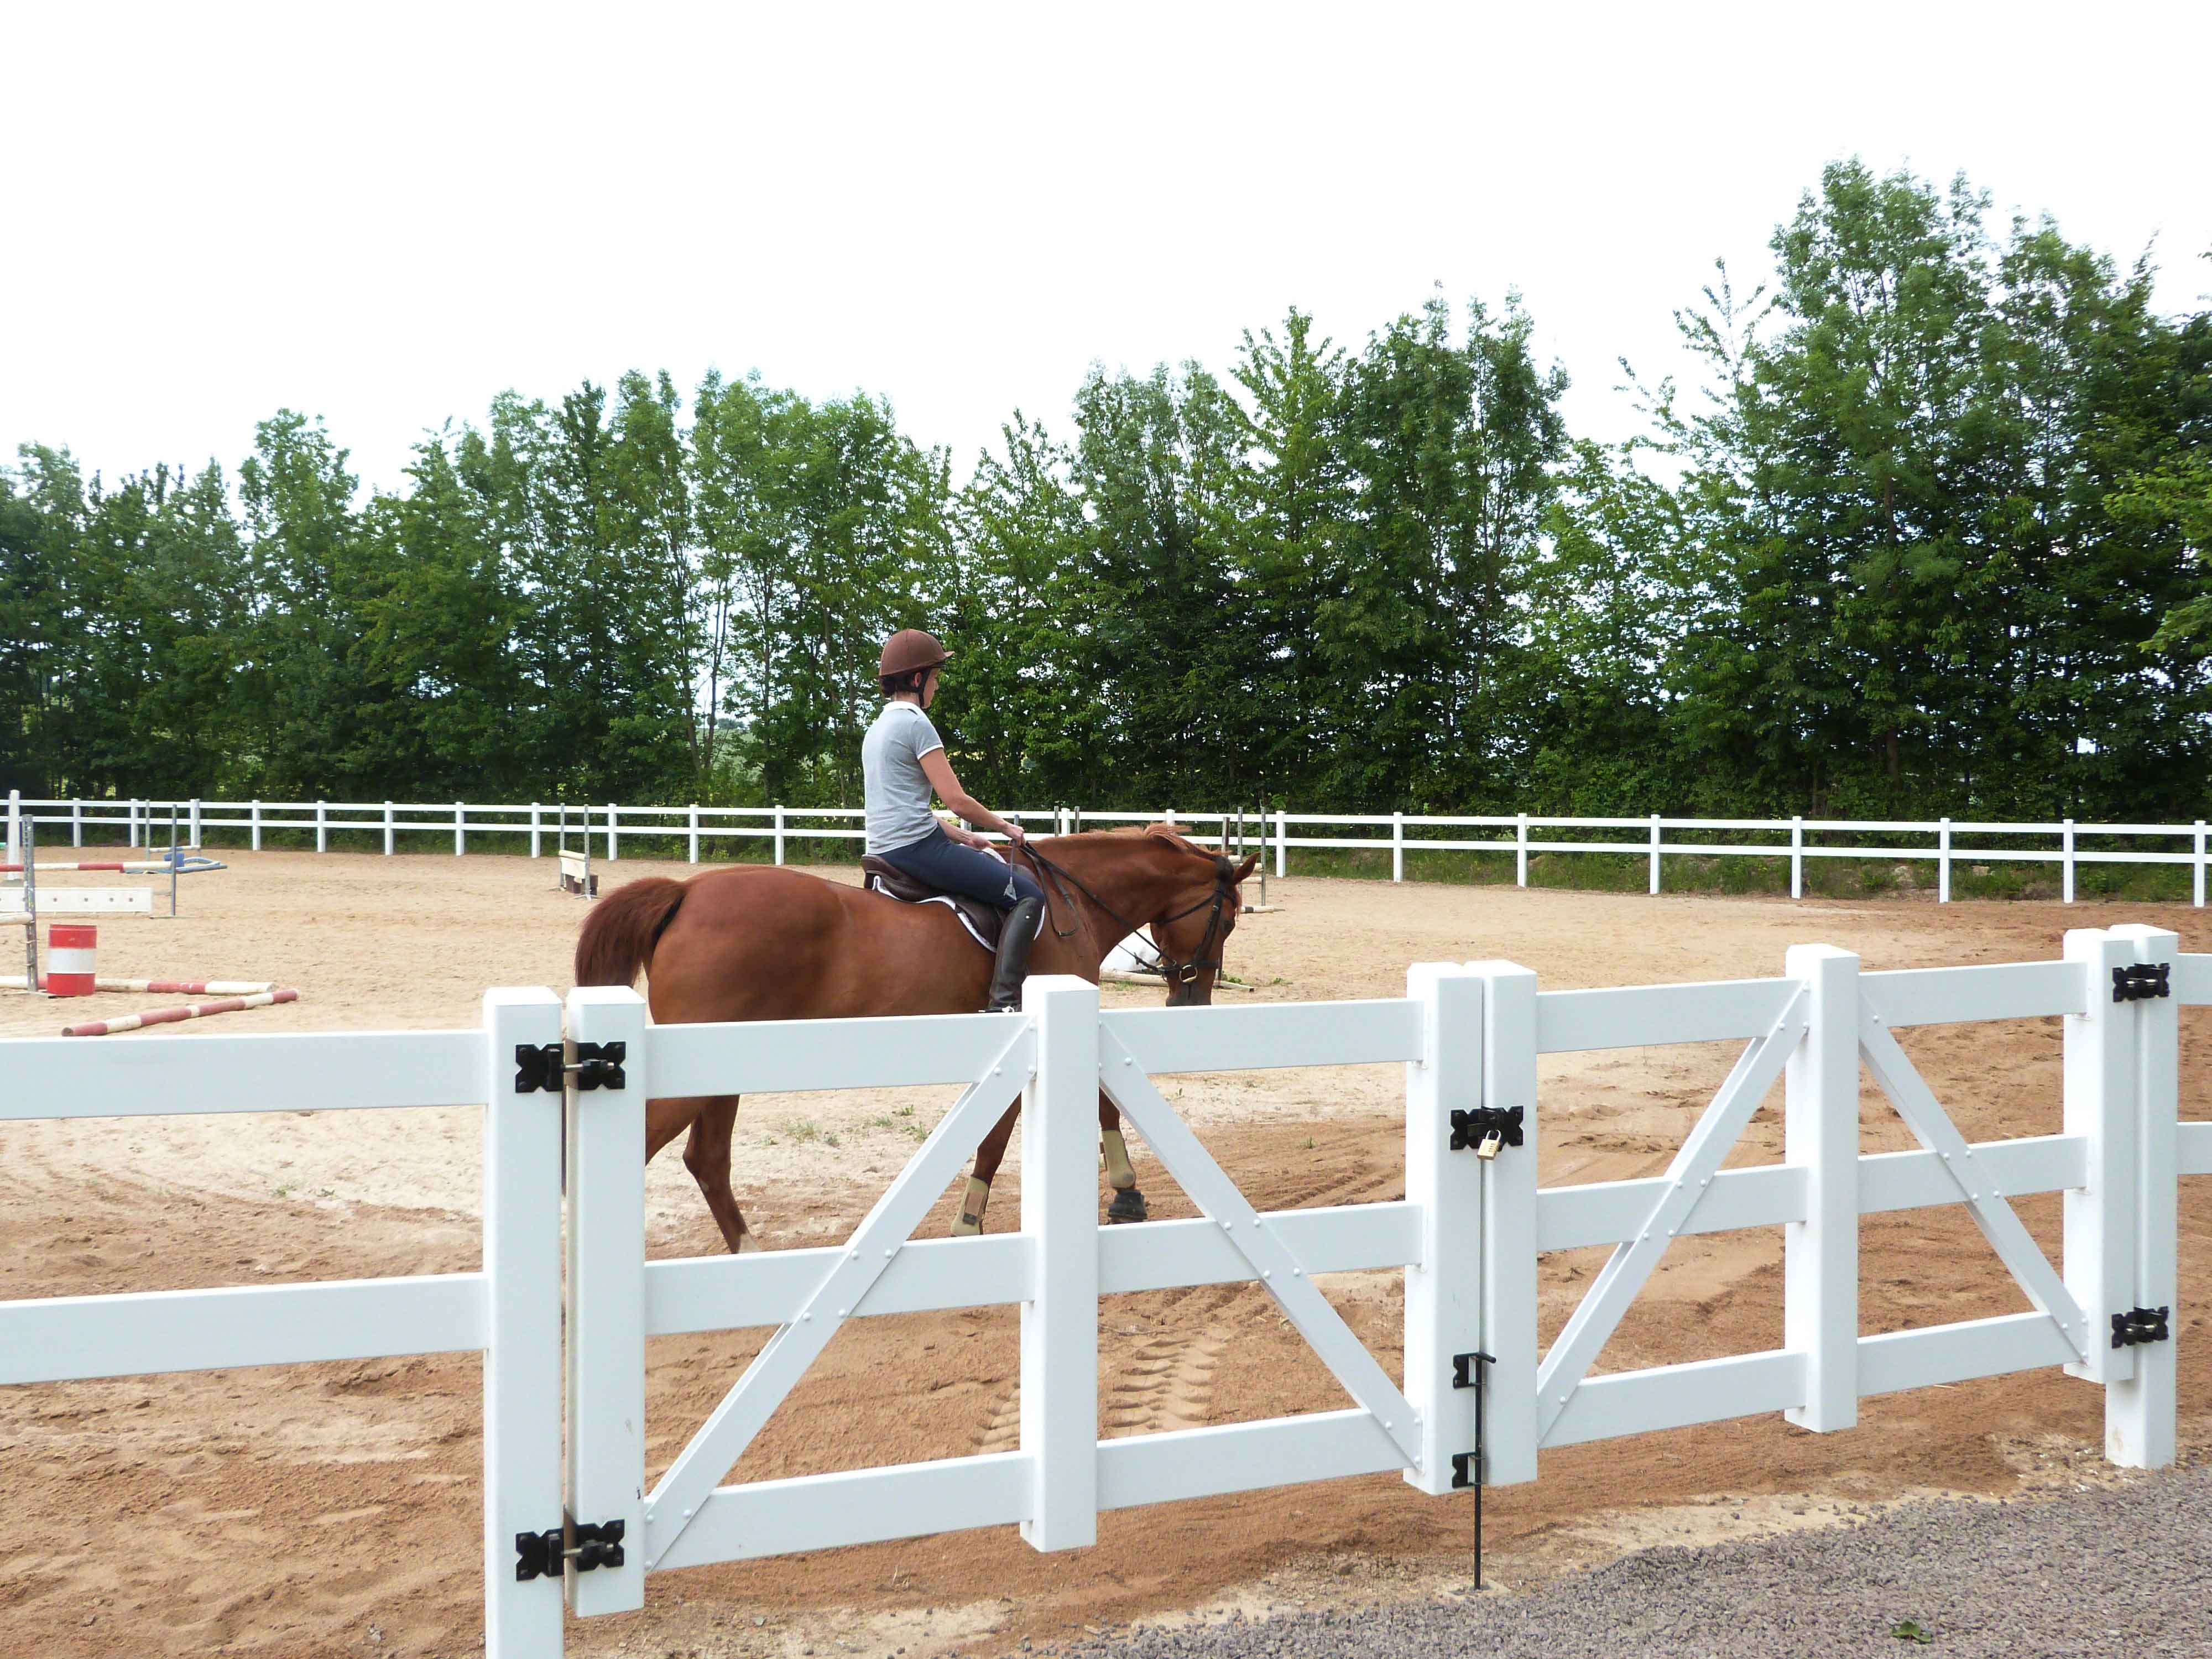 En kvindelig rytter fører hendes hest rundt på en ridebane med spring. Ridebanen er afgrænset af et hestehegn i hvid plast..